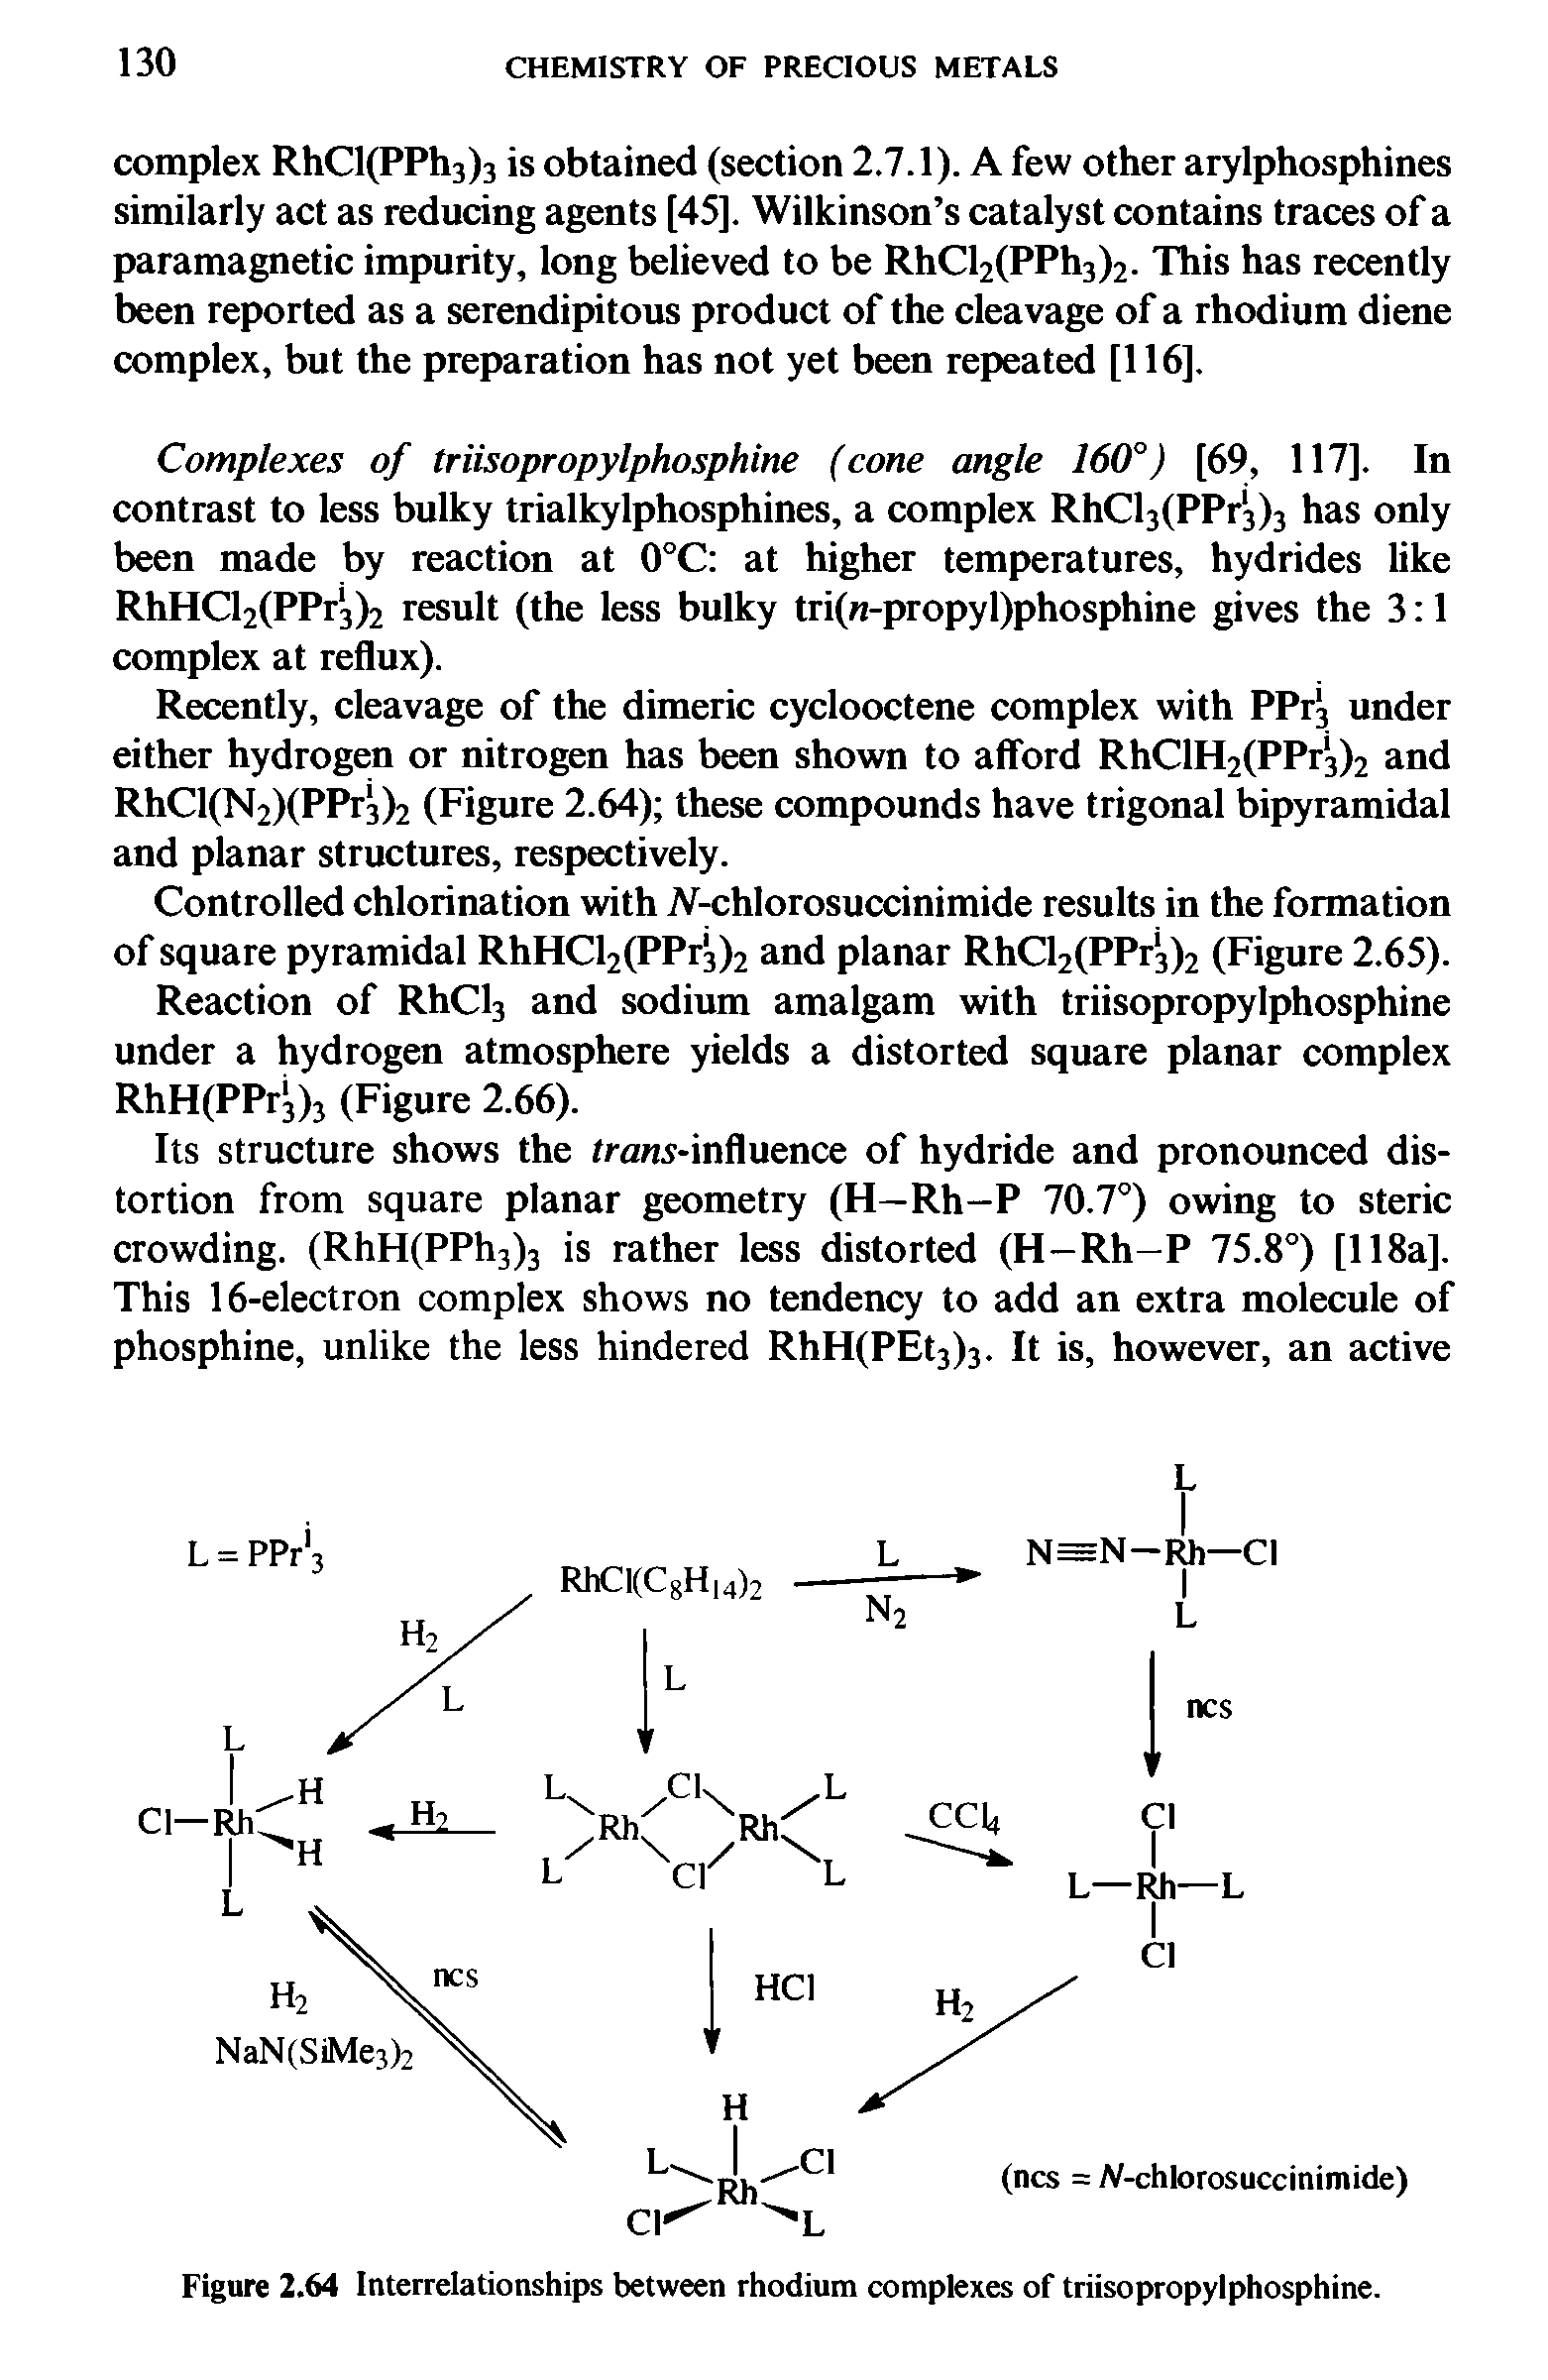 Figure 2.64 Interrelationships between rhodium complexes of triisopropylphosphine.